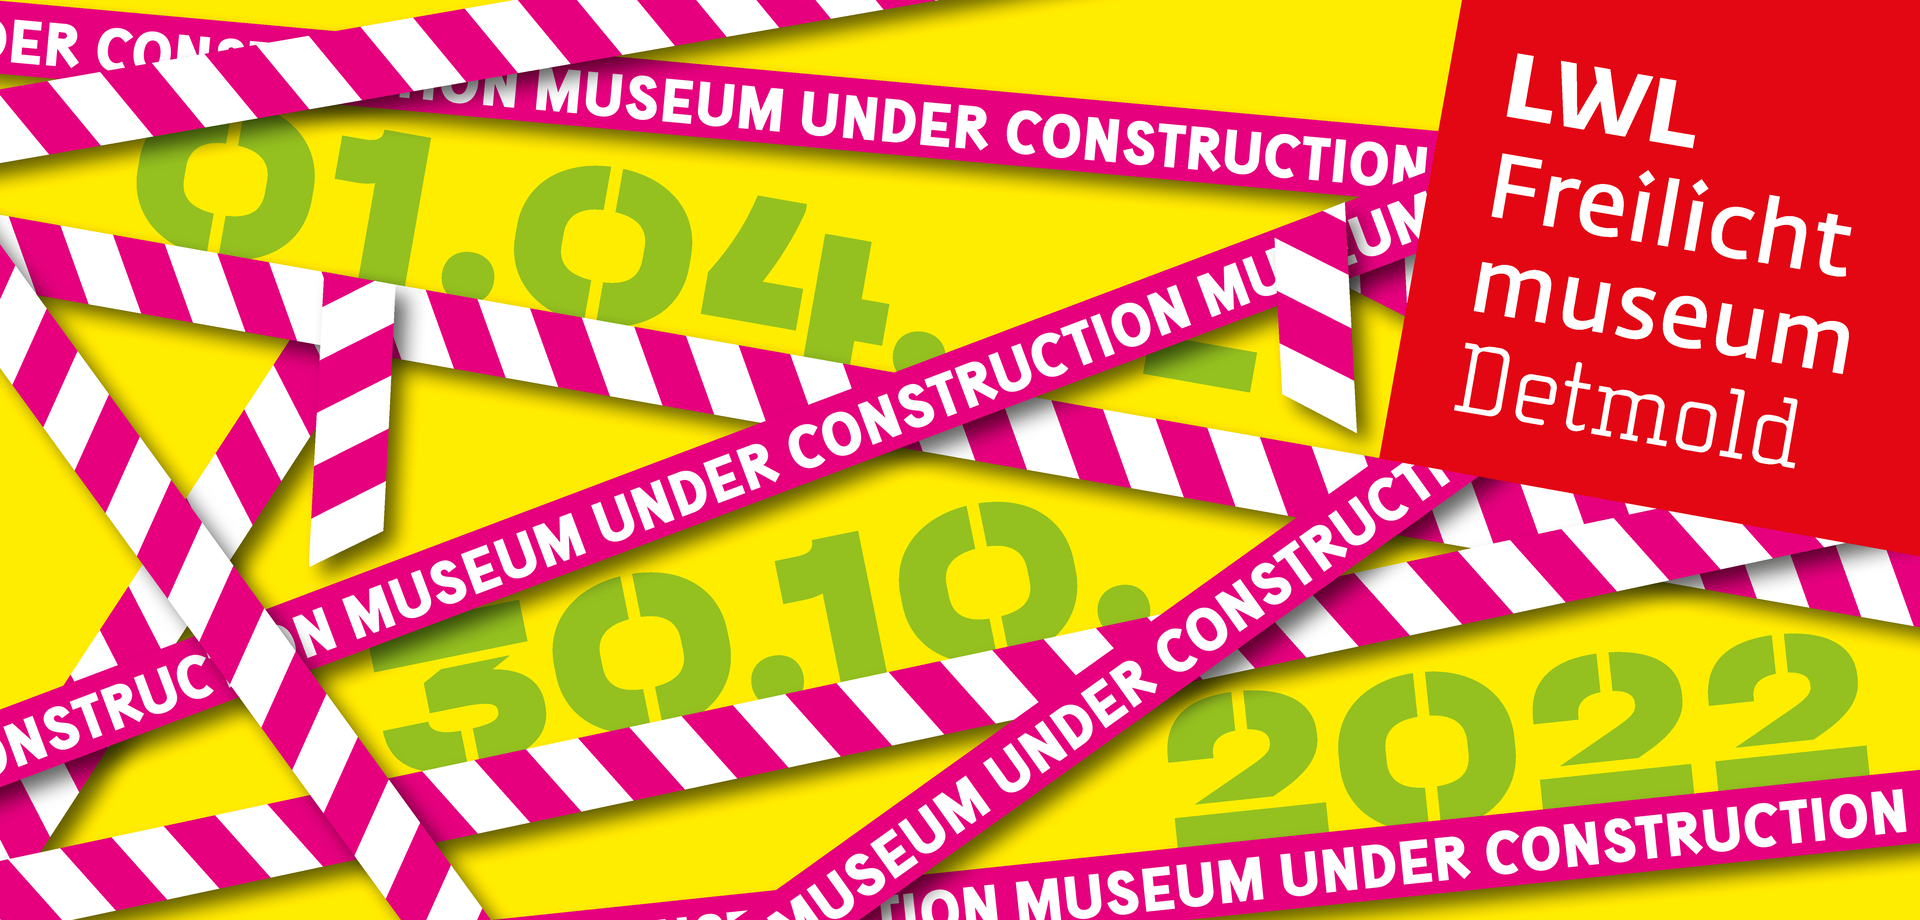 Auf einem kreuz und quer gezogenen Band steht "Museum under construction".